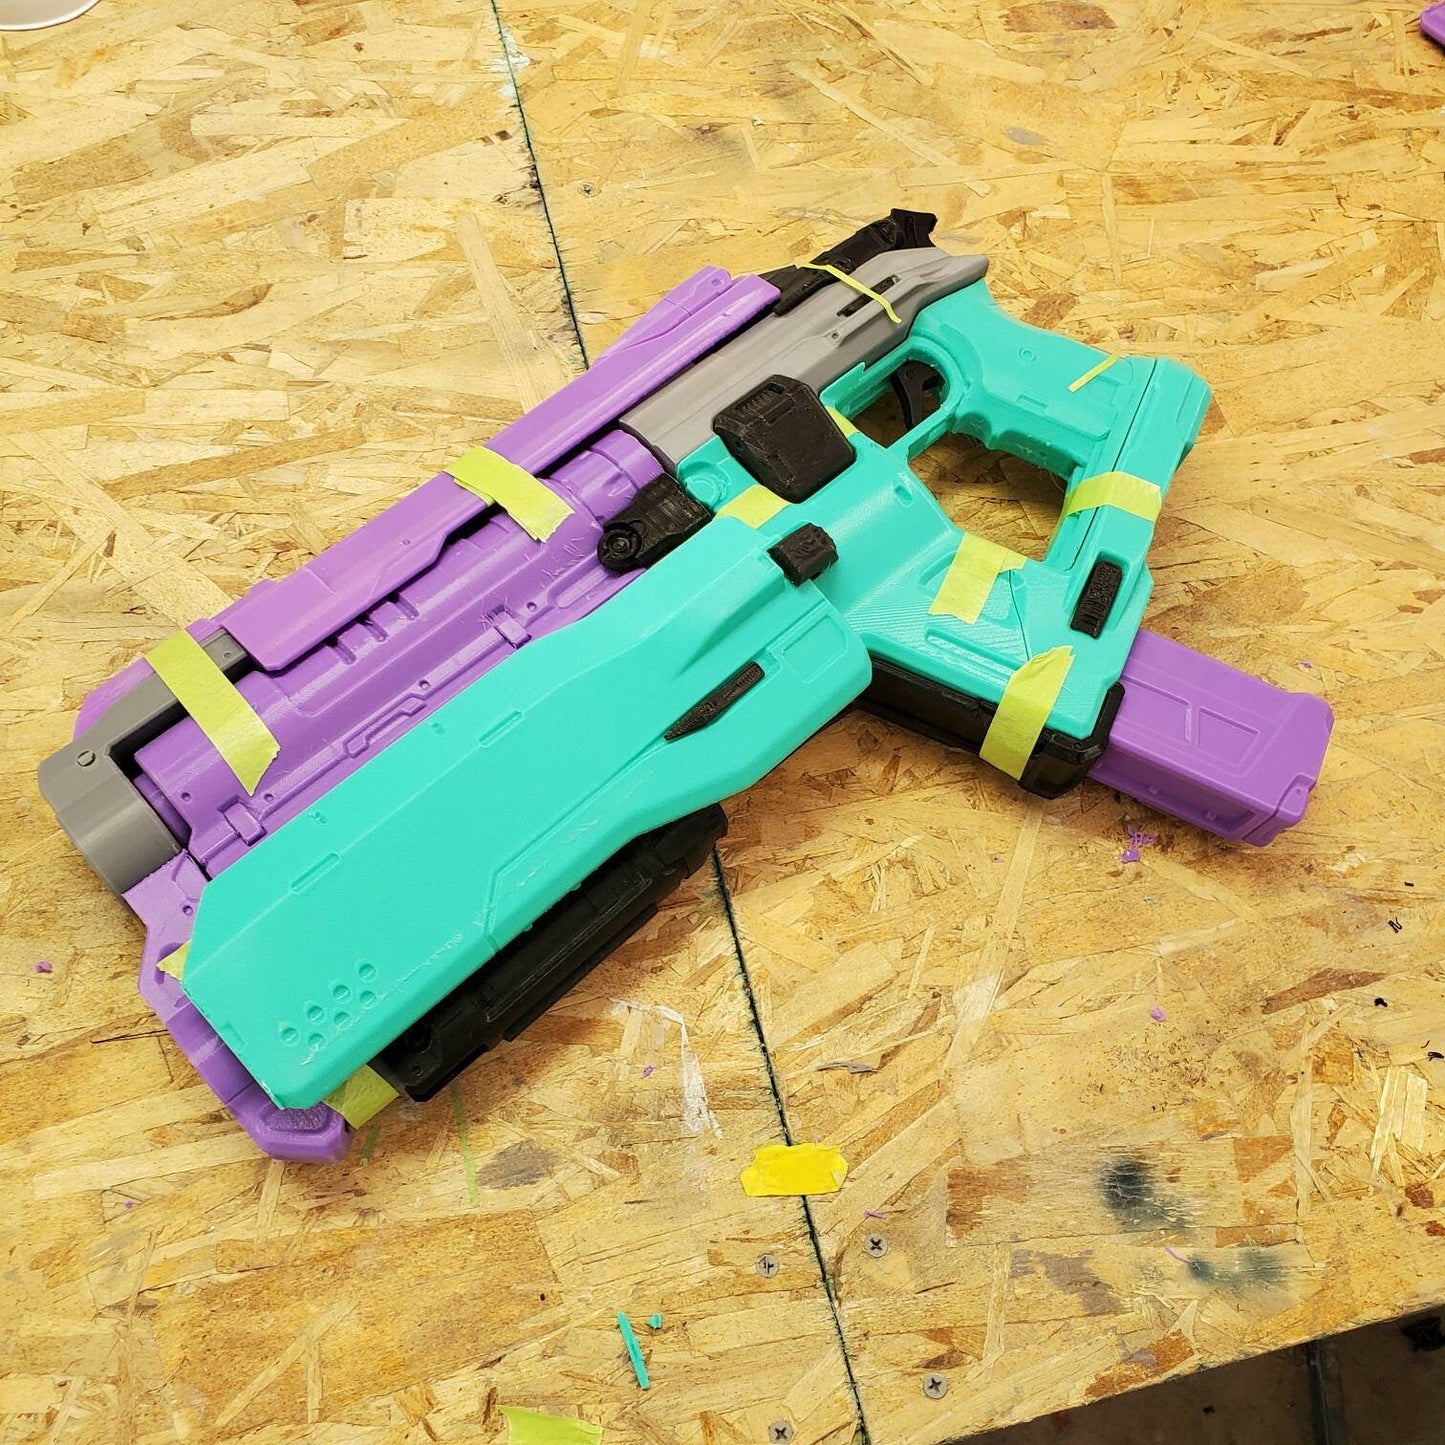 Doom Eternal Cosplay Pistol - 3D printed kit/Replica